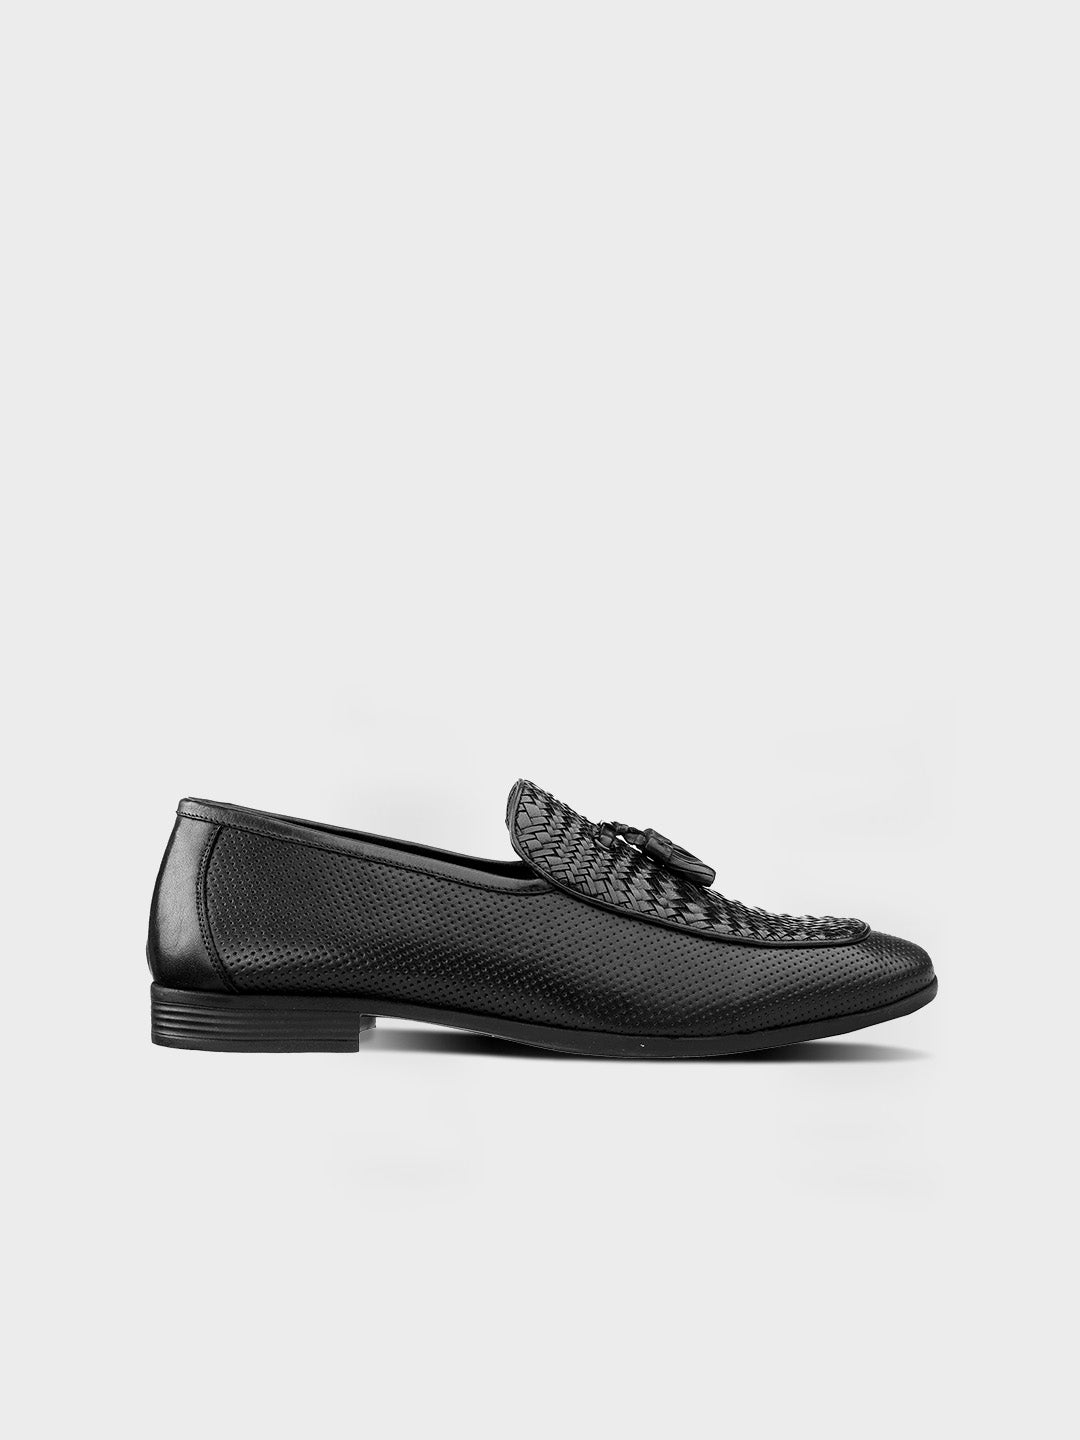 Men's Classic Black Leather Slip-On Tassel Shoes